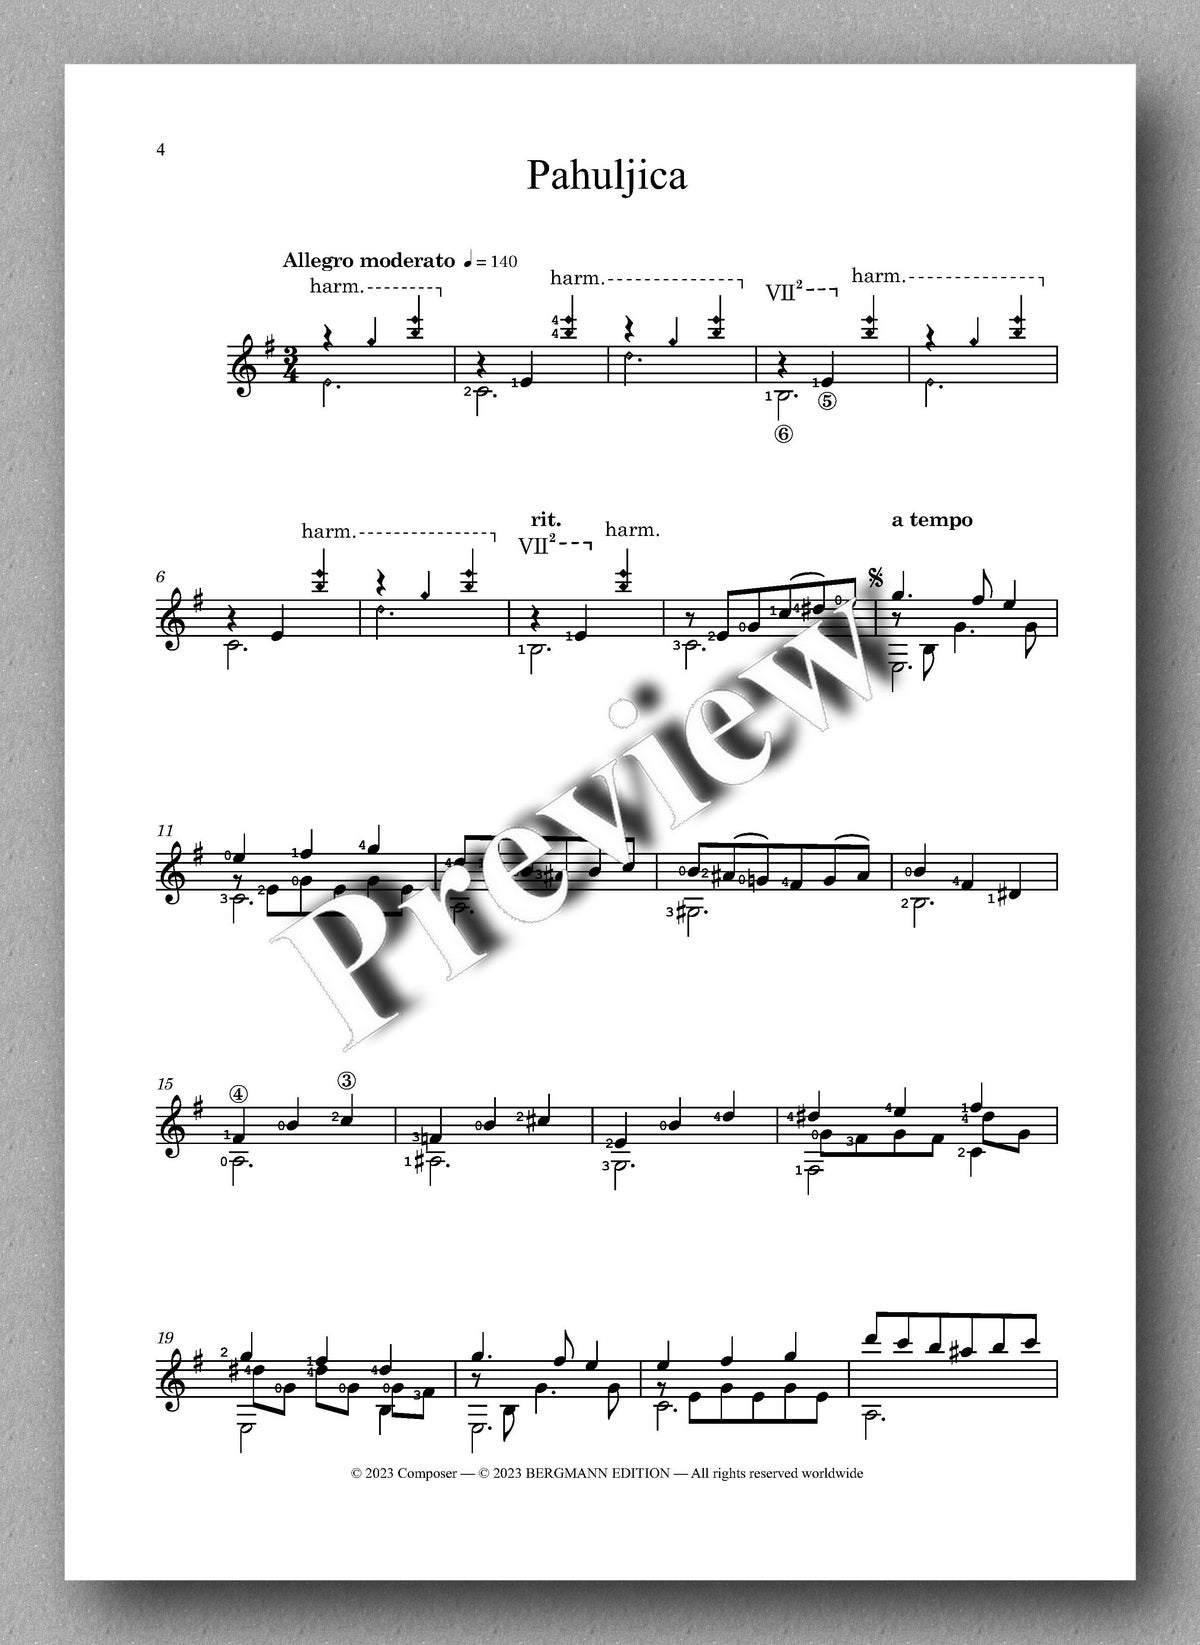 “Pahuljica” - Miniature no. 3 by Filip Alilovic - preview of the music score 1